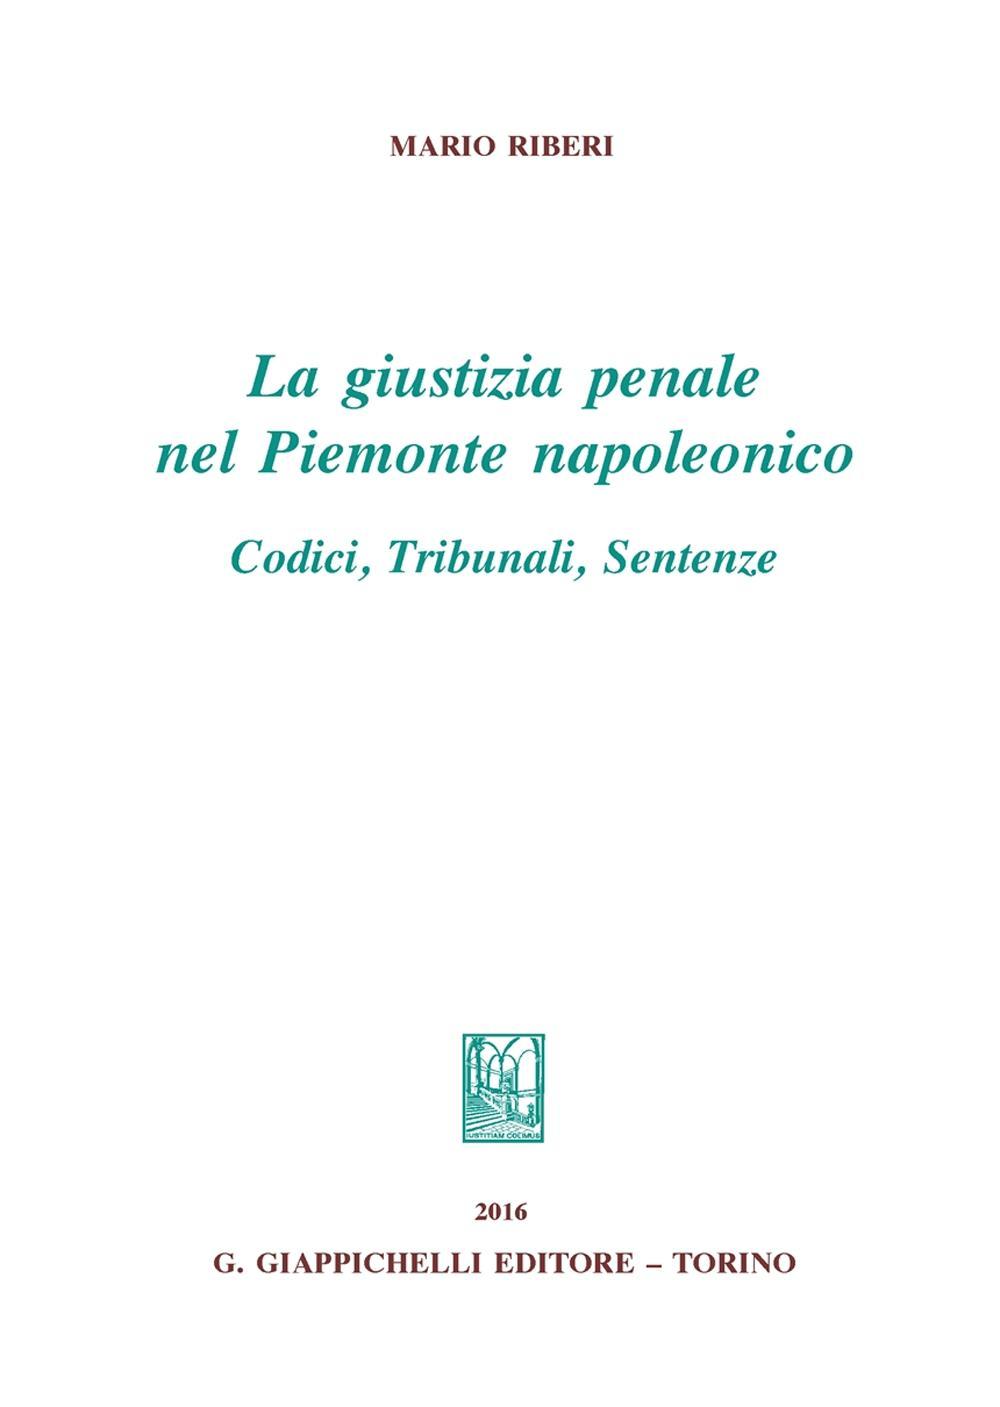 La giustizia penale nel Piemonte napoleonico. Codici, tribunali, sentenze